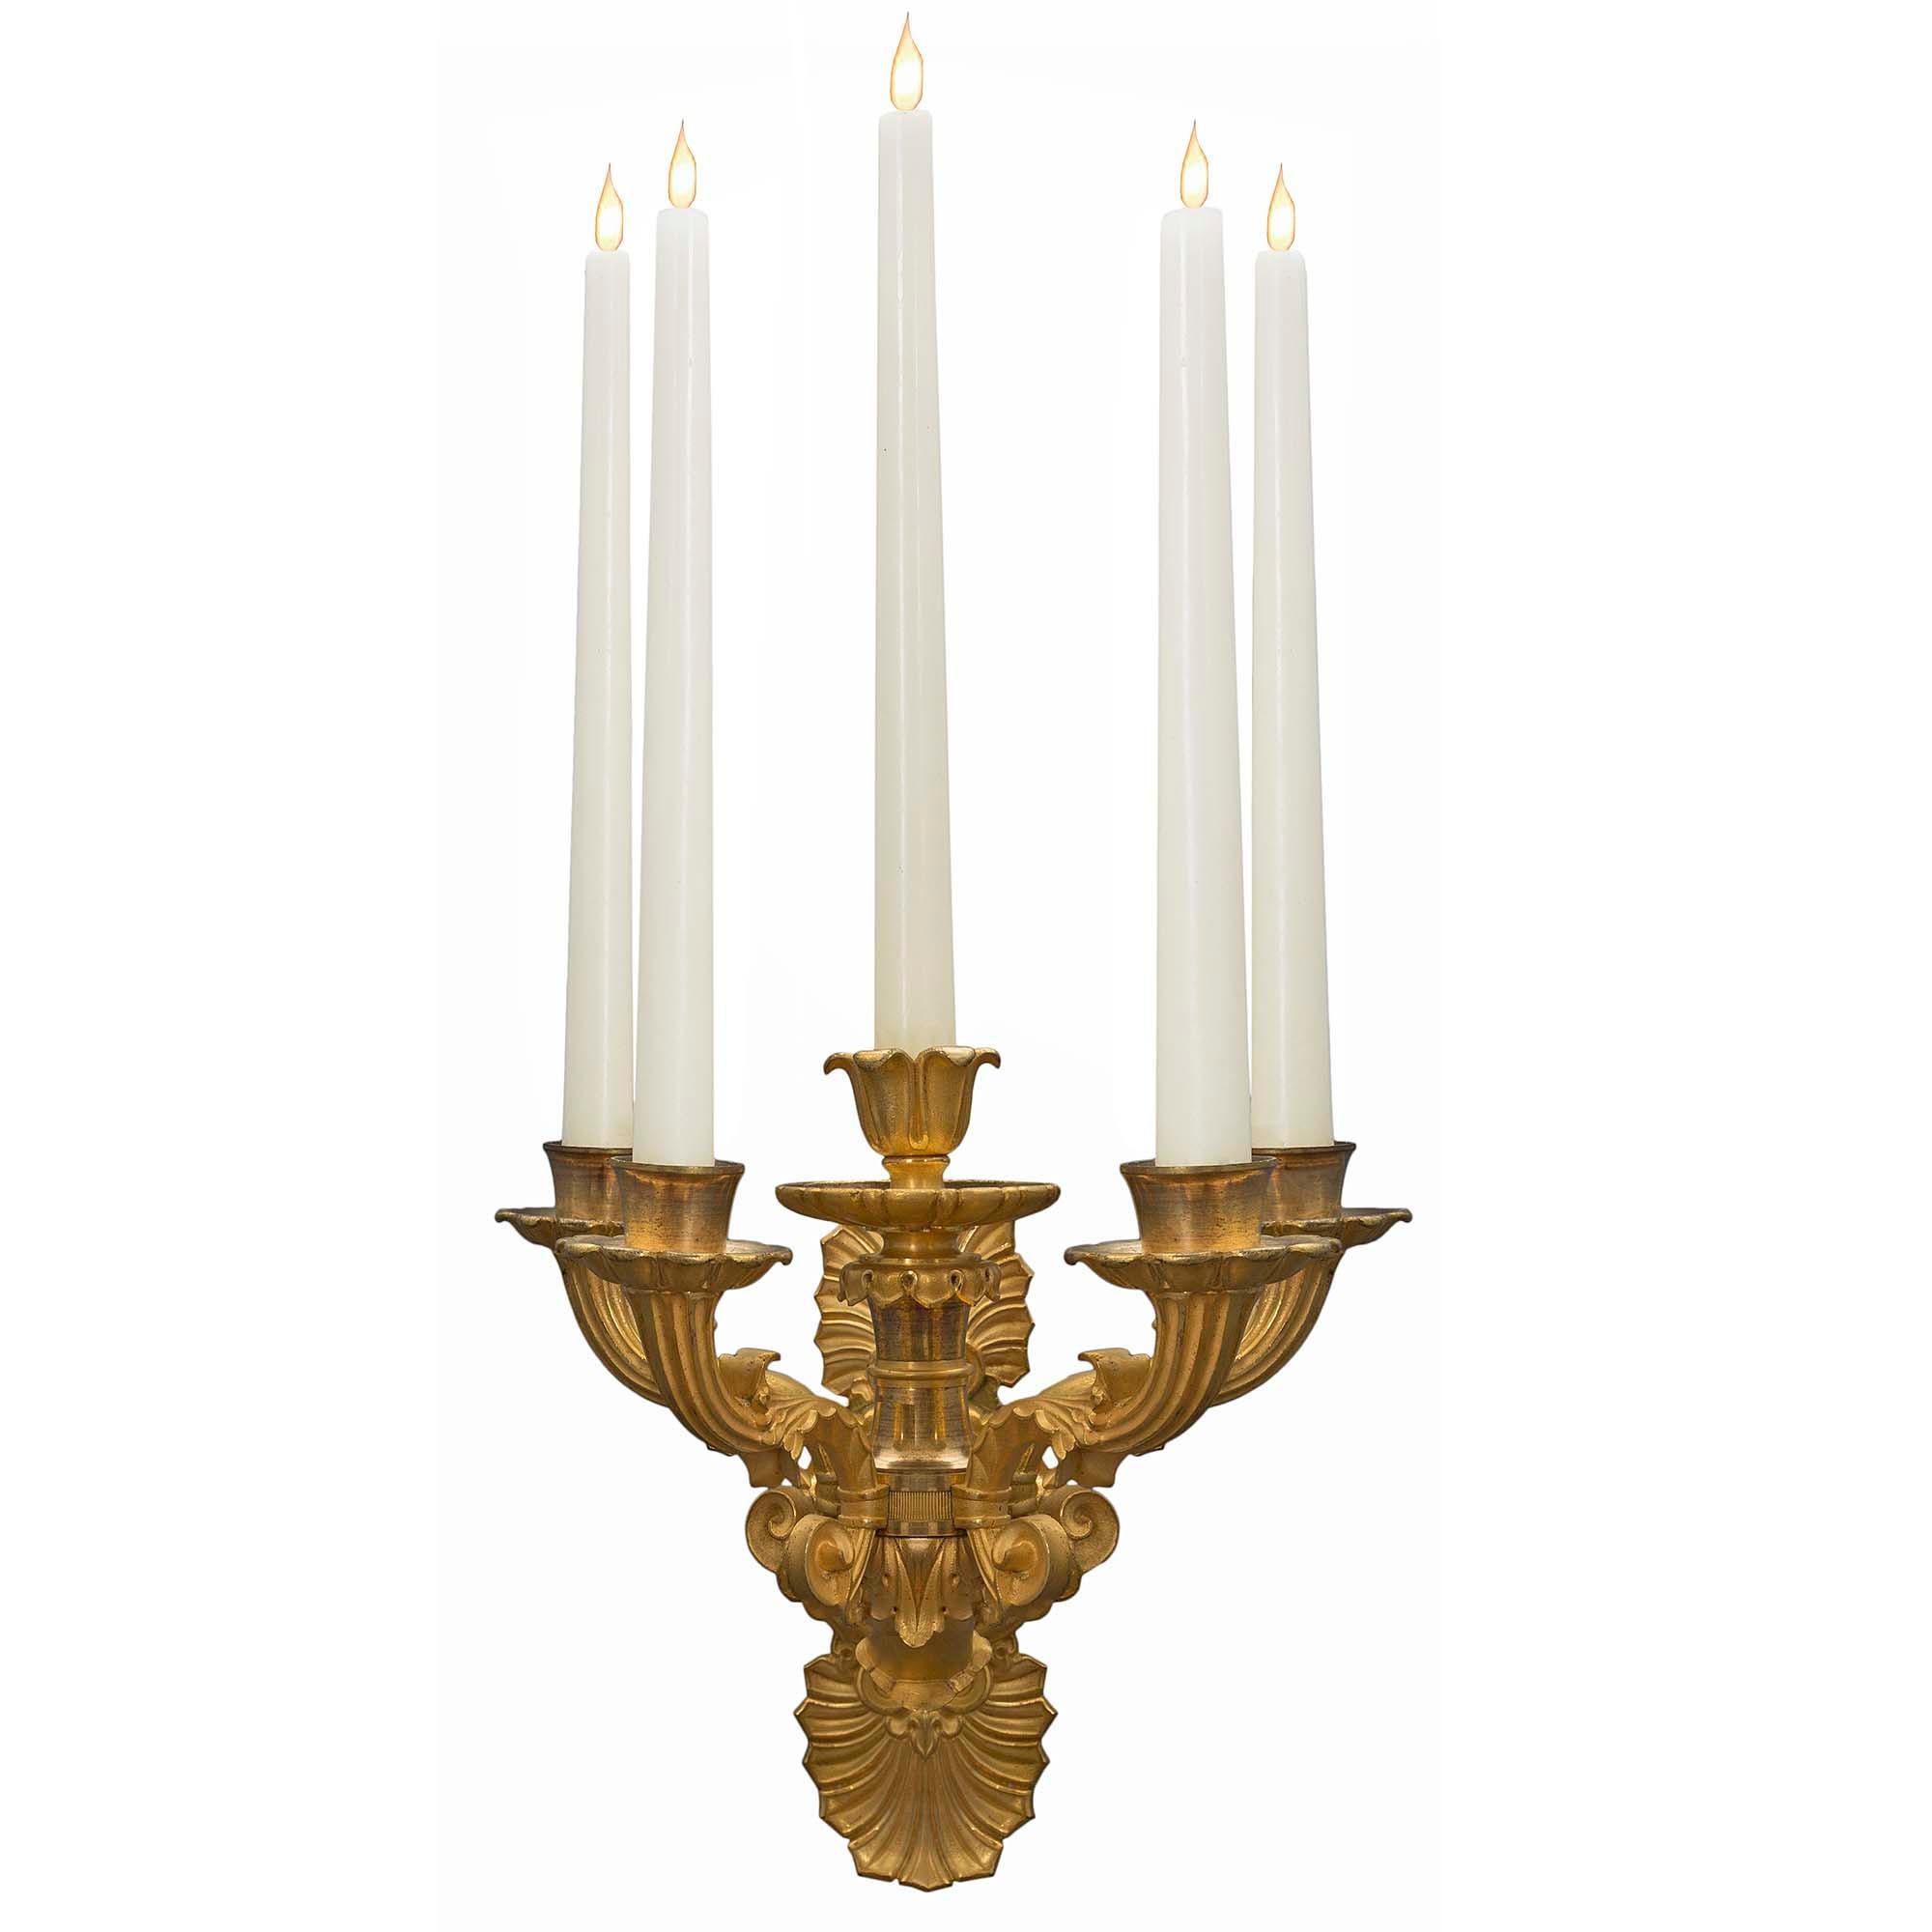 Une belle paire d'appliques à cinq bras de lumière en bronze doré de style Louis Philippe du 19ème siècle. La plaque arrière est ornée d'une coquille festonnée, d'une fleur de lys et d'un motif de volutes en haut et en bas, le tout centré par une